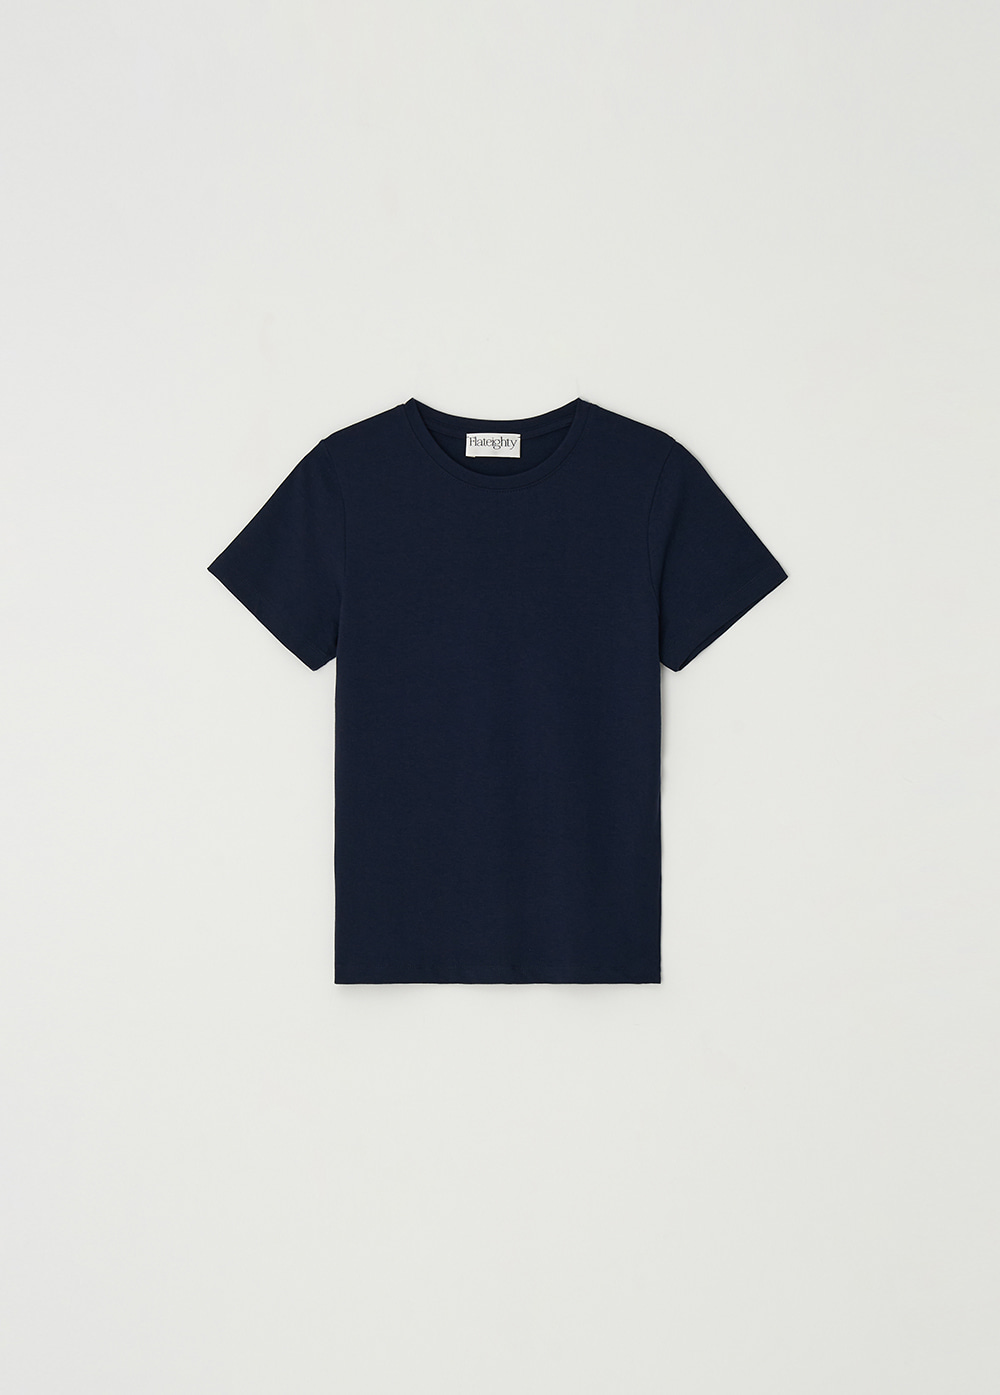 2nd/ Modal T-shirt (Navy)